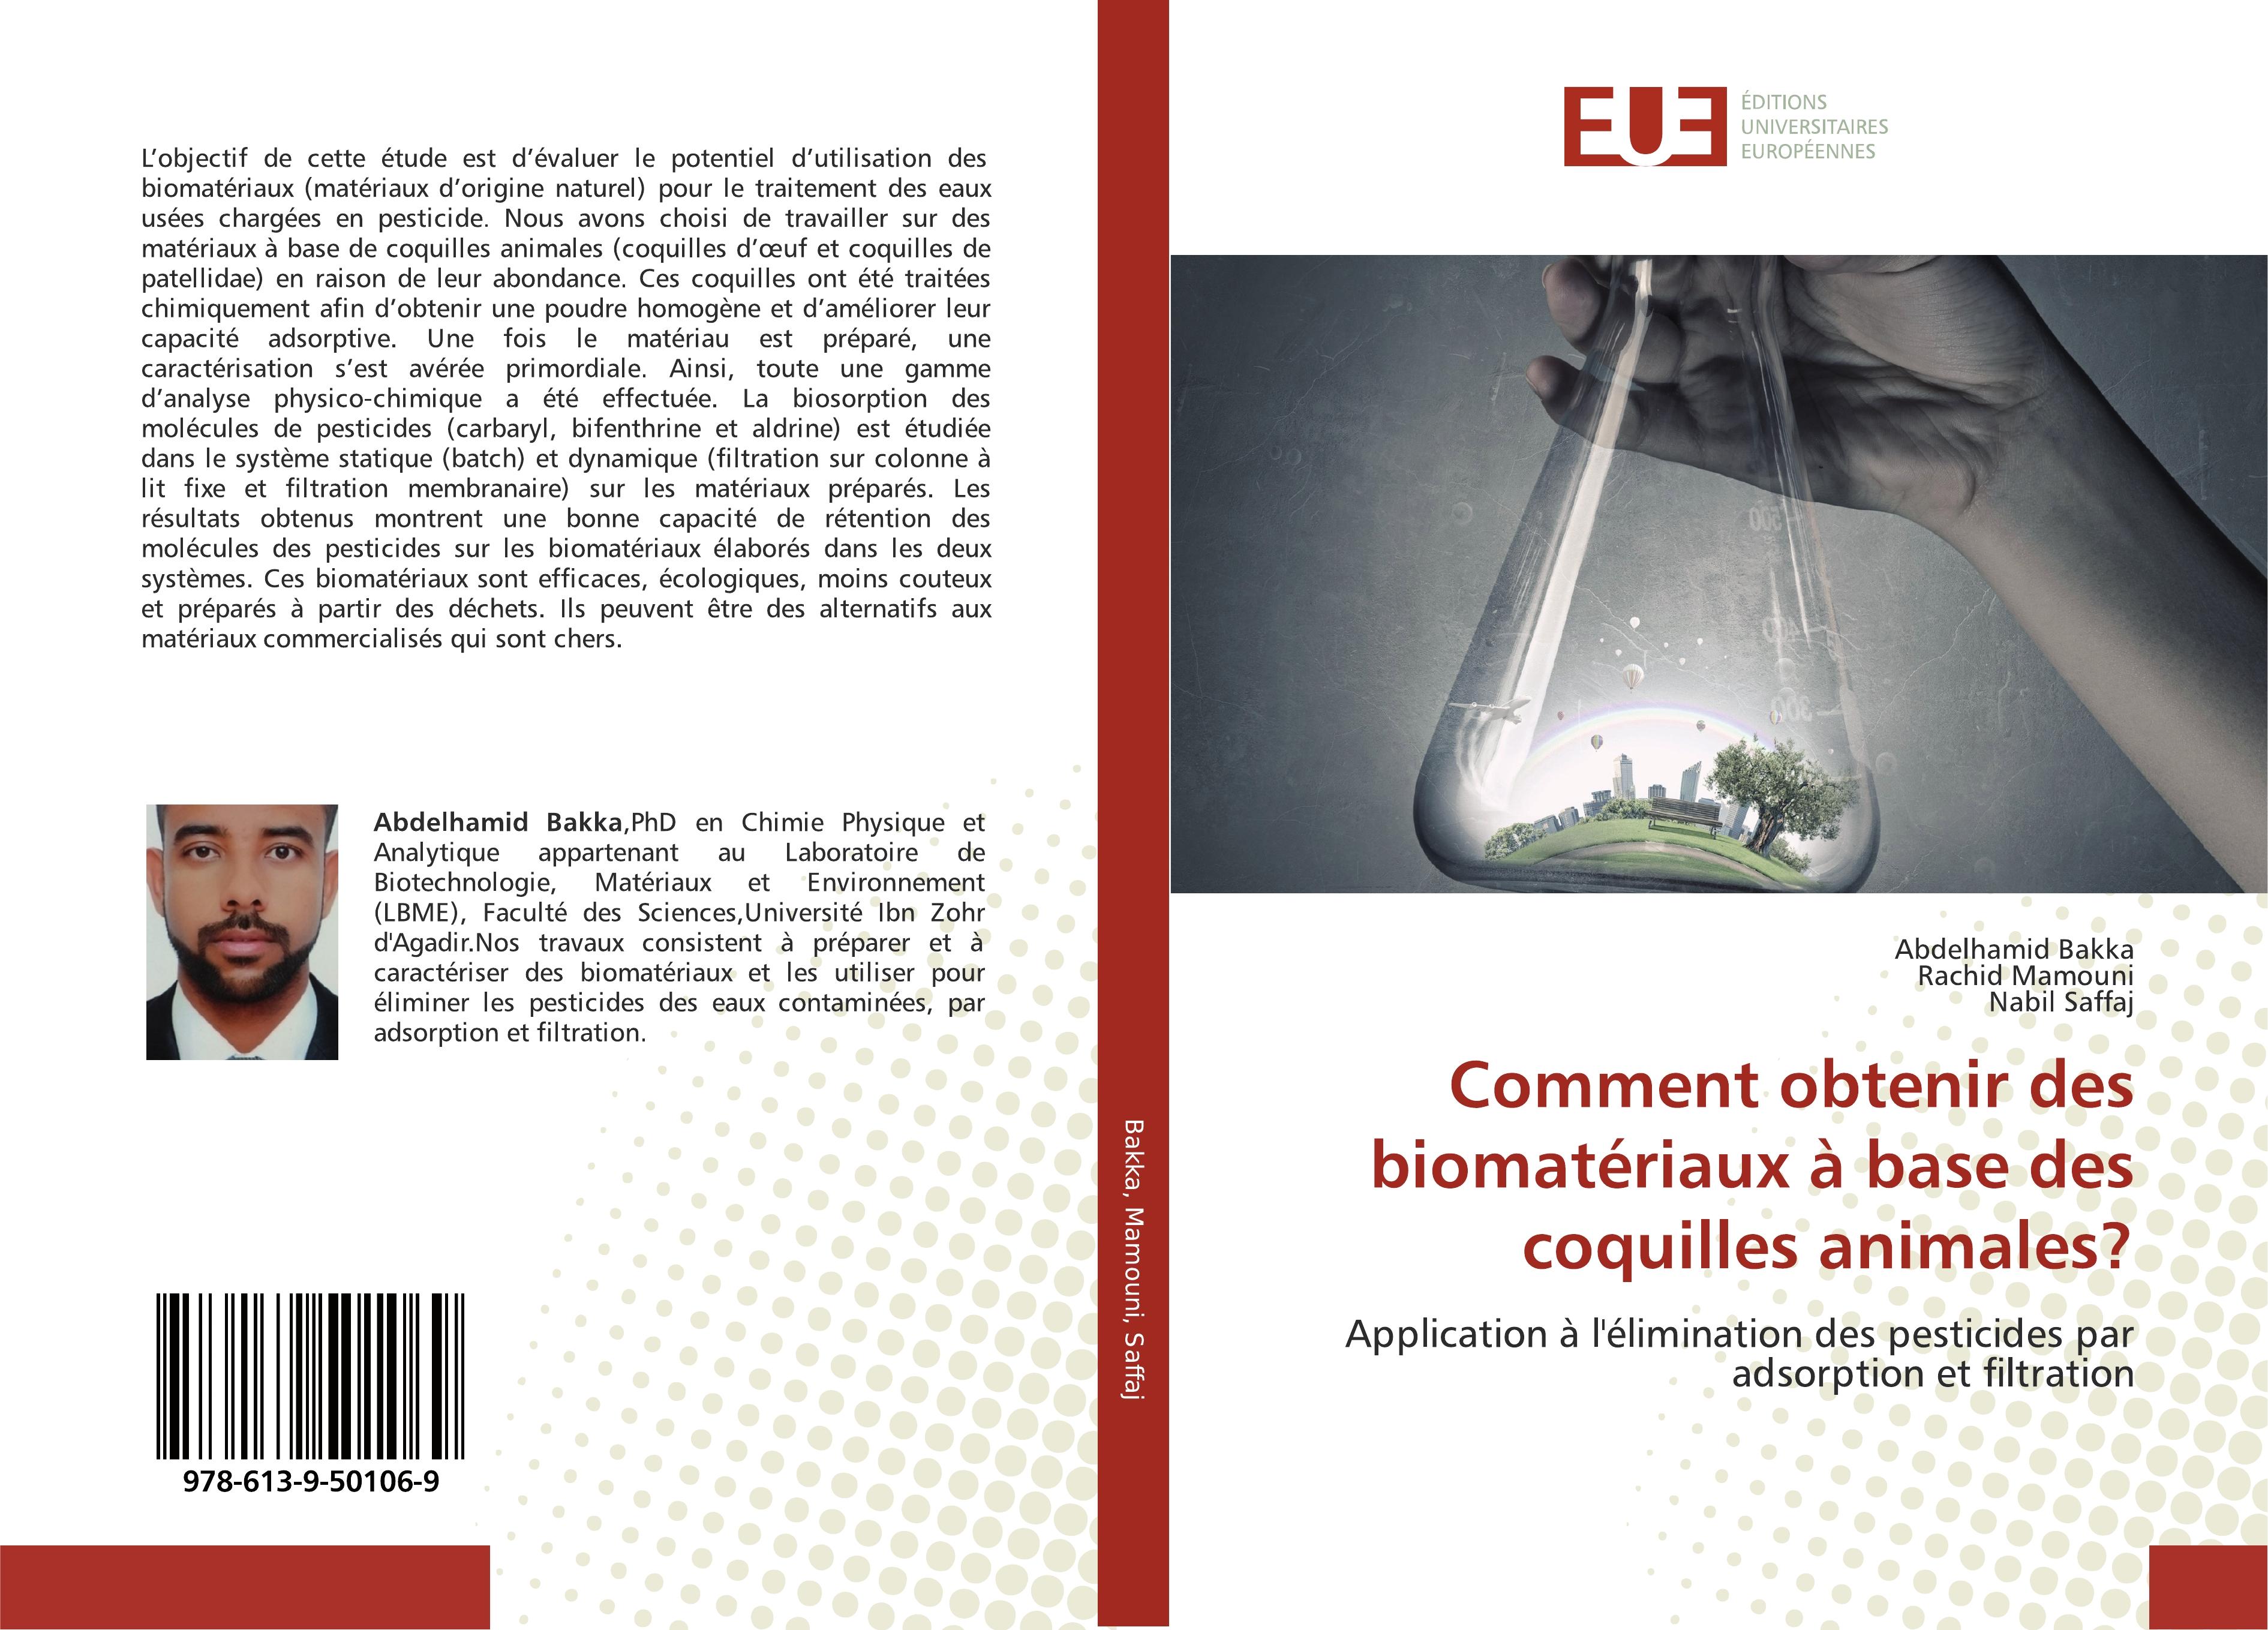 Comment obtenir des biomatériaux à base des coquilles animales? - Abdelhamid Bakka Rachid Mamouni Nabil Saffaj